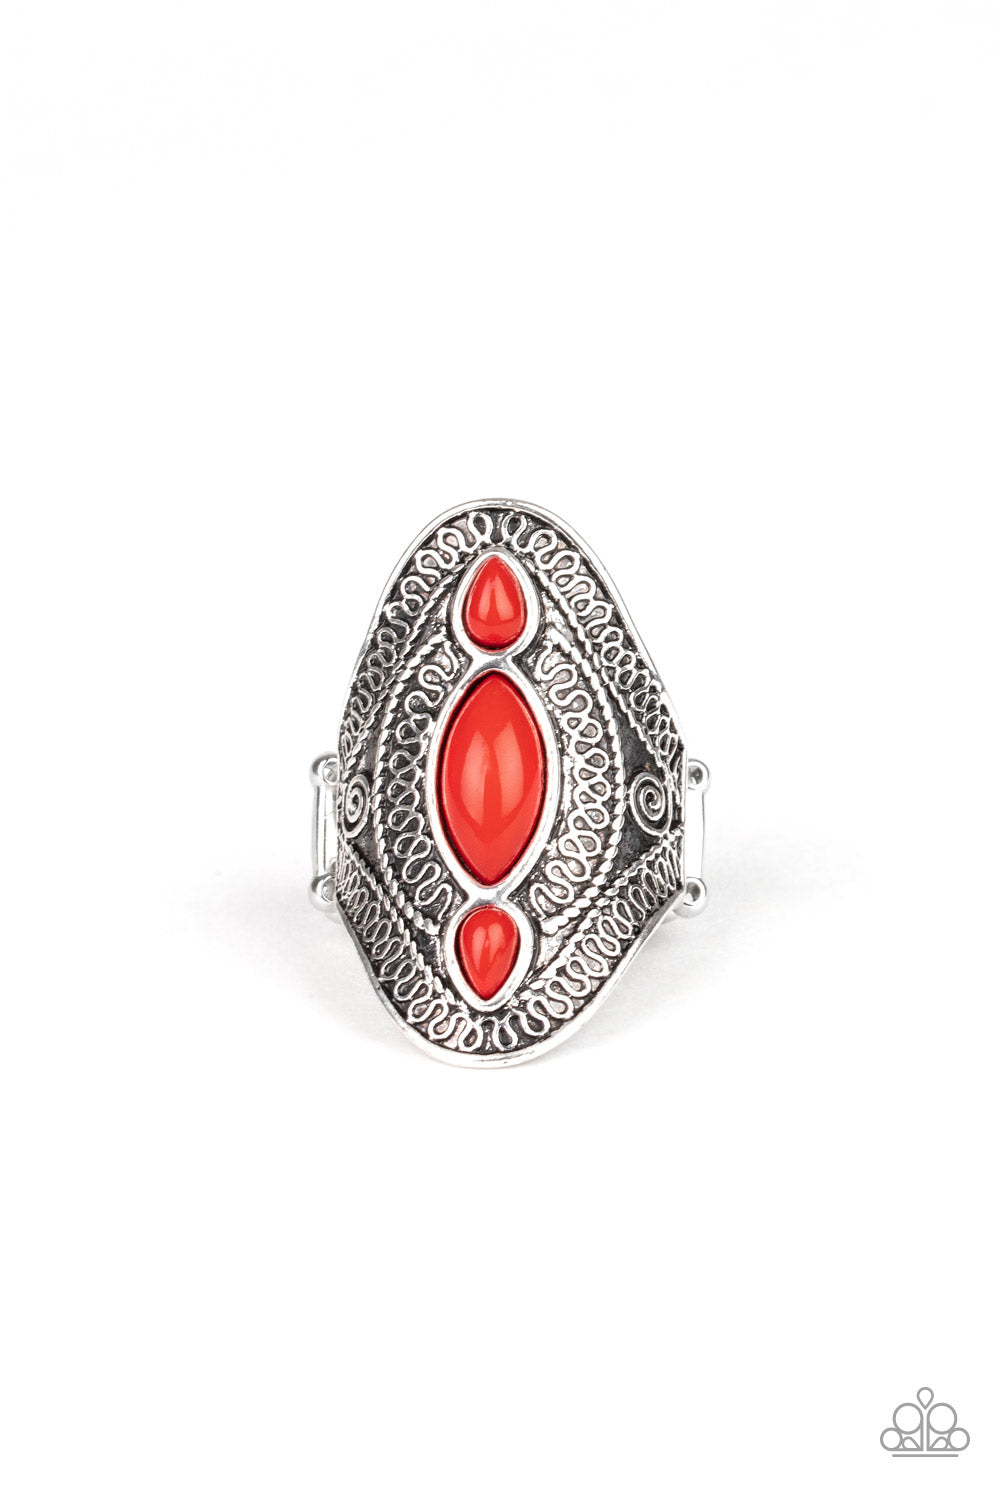 Kindred Spirit - Red ring